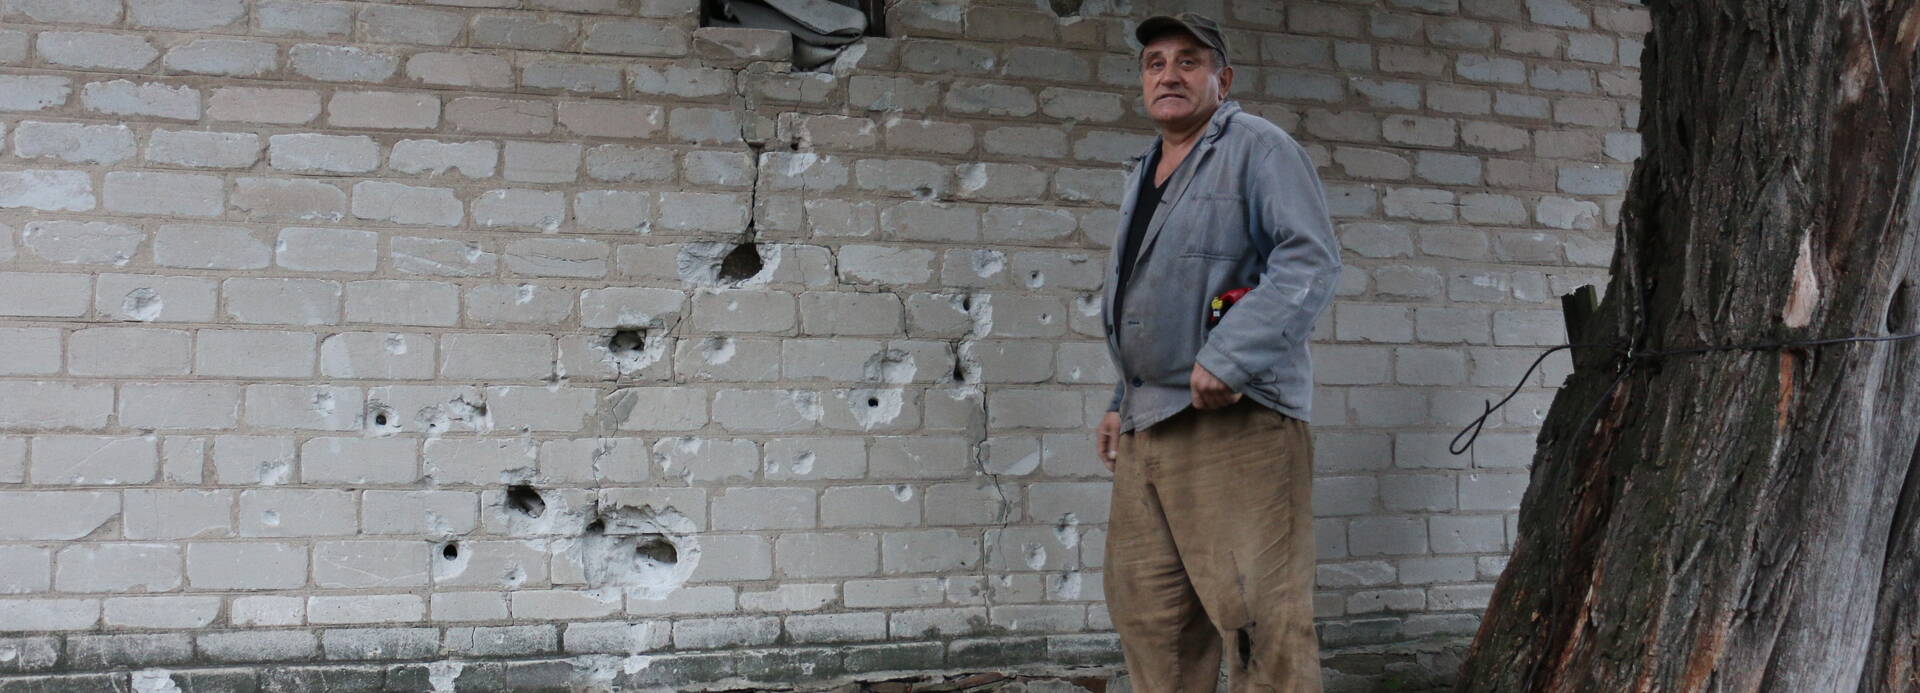 Ein Hilfeempfänger in der Ukraine steht vor einer zerschossenen Wand.